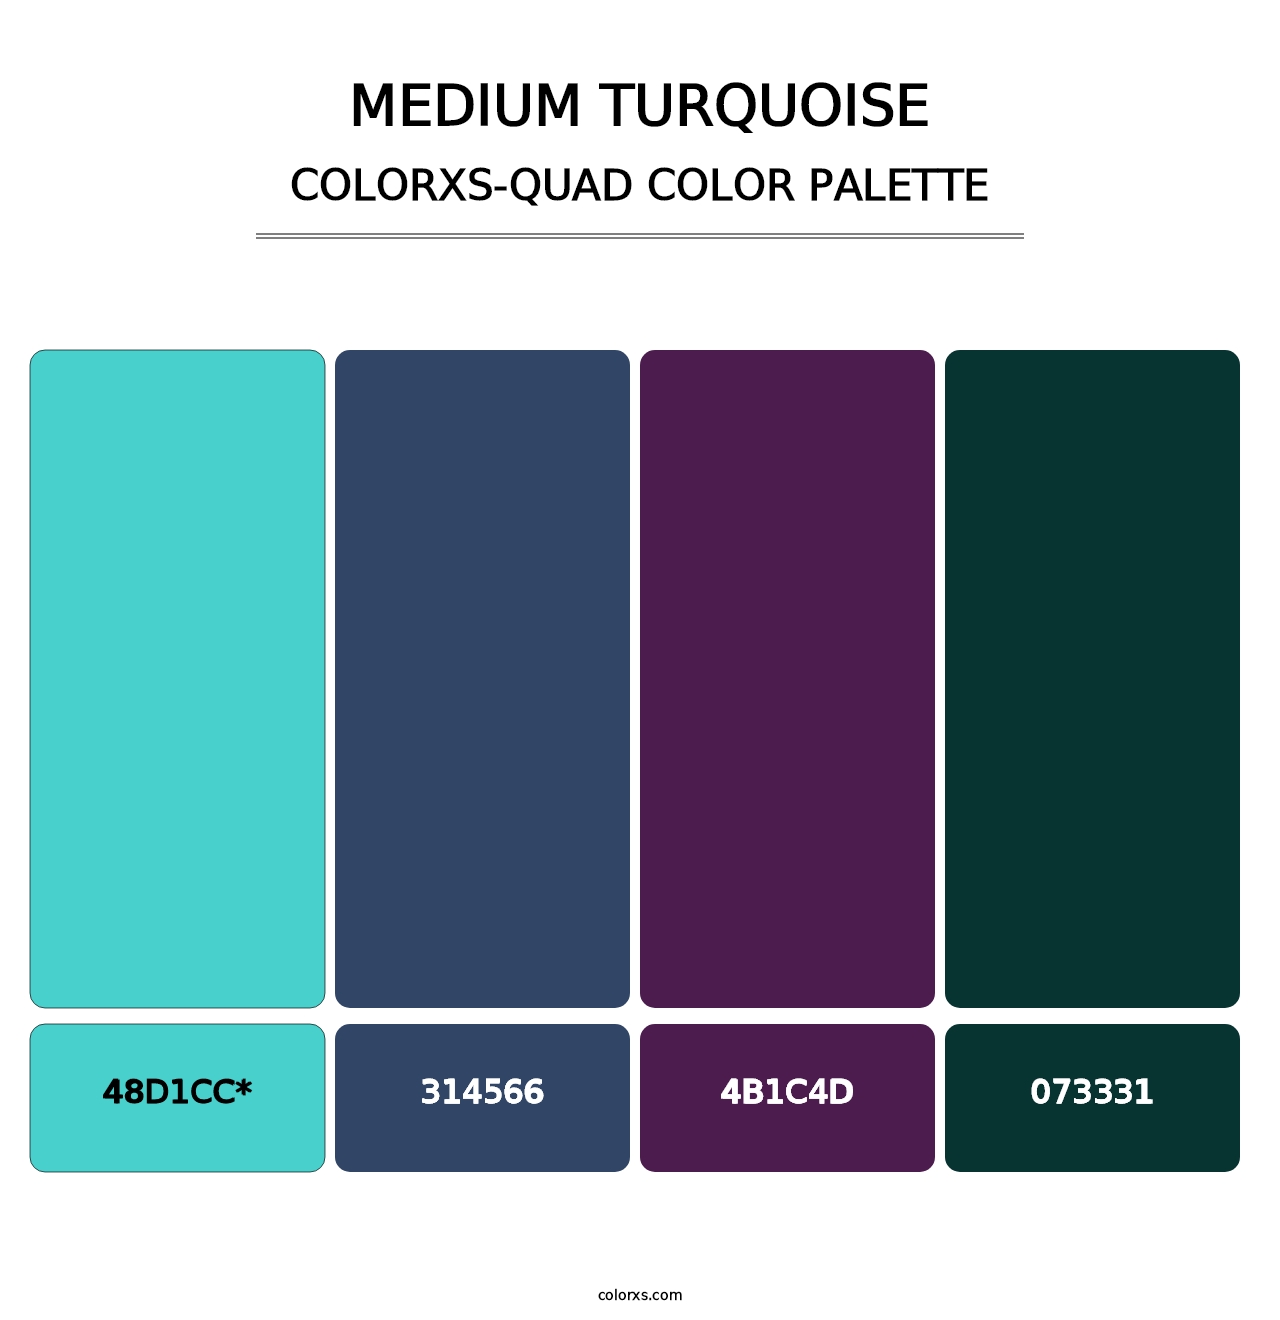 Medium Turquoise - Colorxs Quad Palette